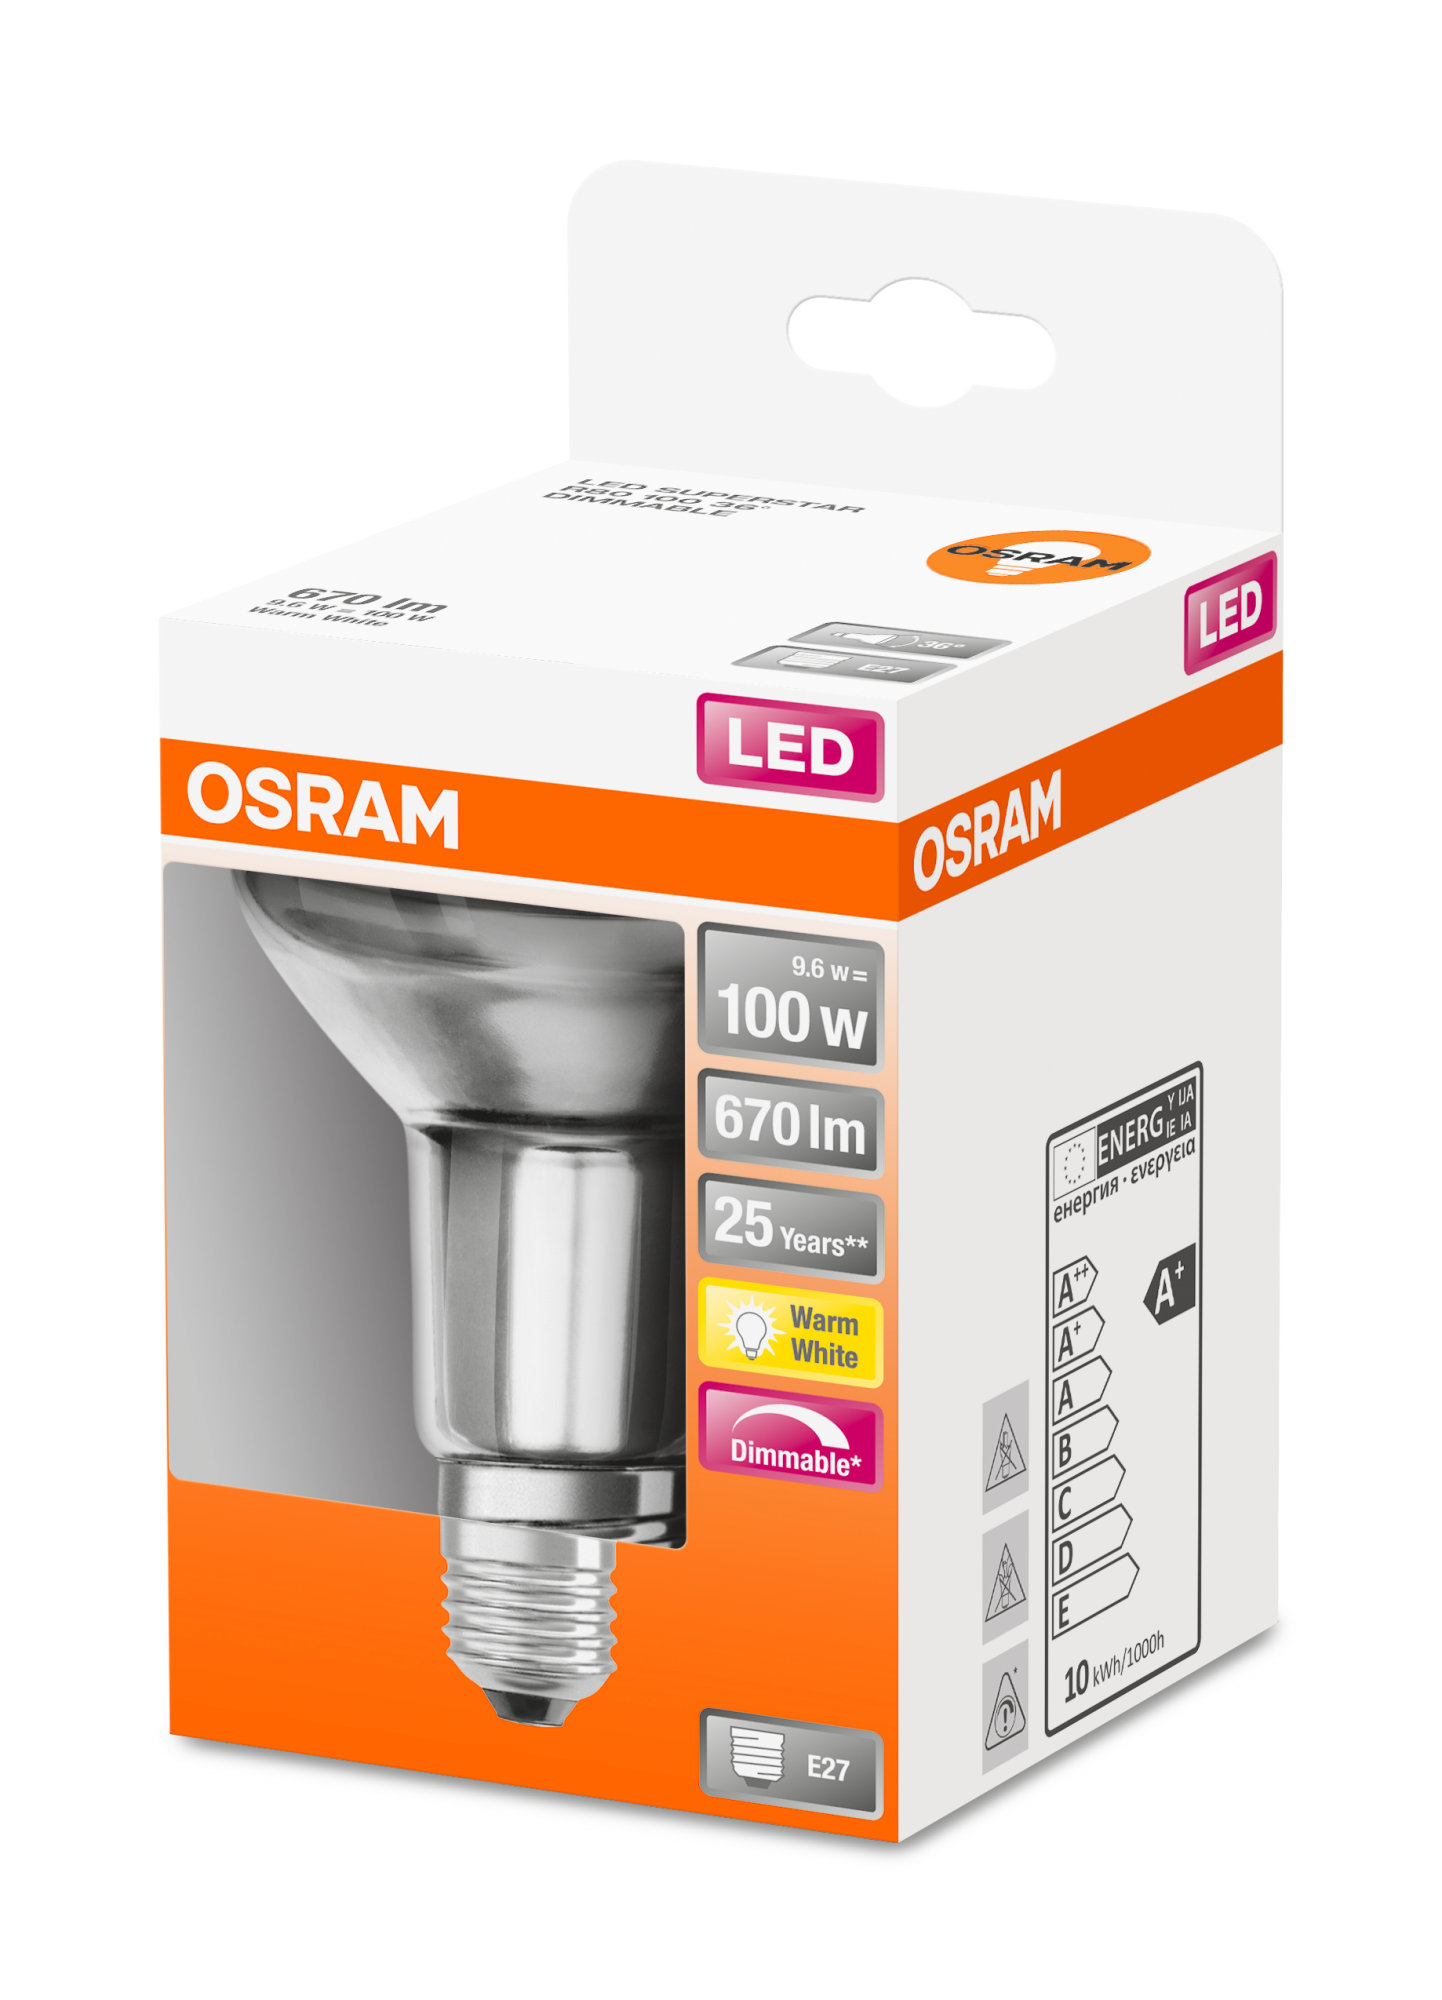 Osram LED SUPERSTAR R80 100 DIM 36° 9,6W 827 E27 670lm 2700K